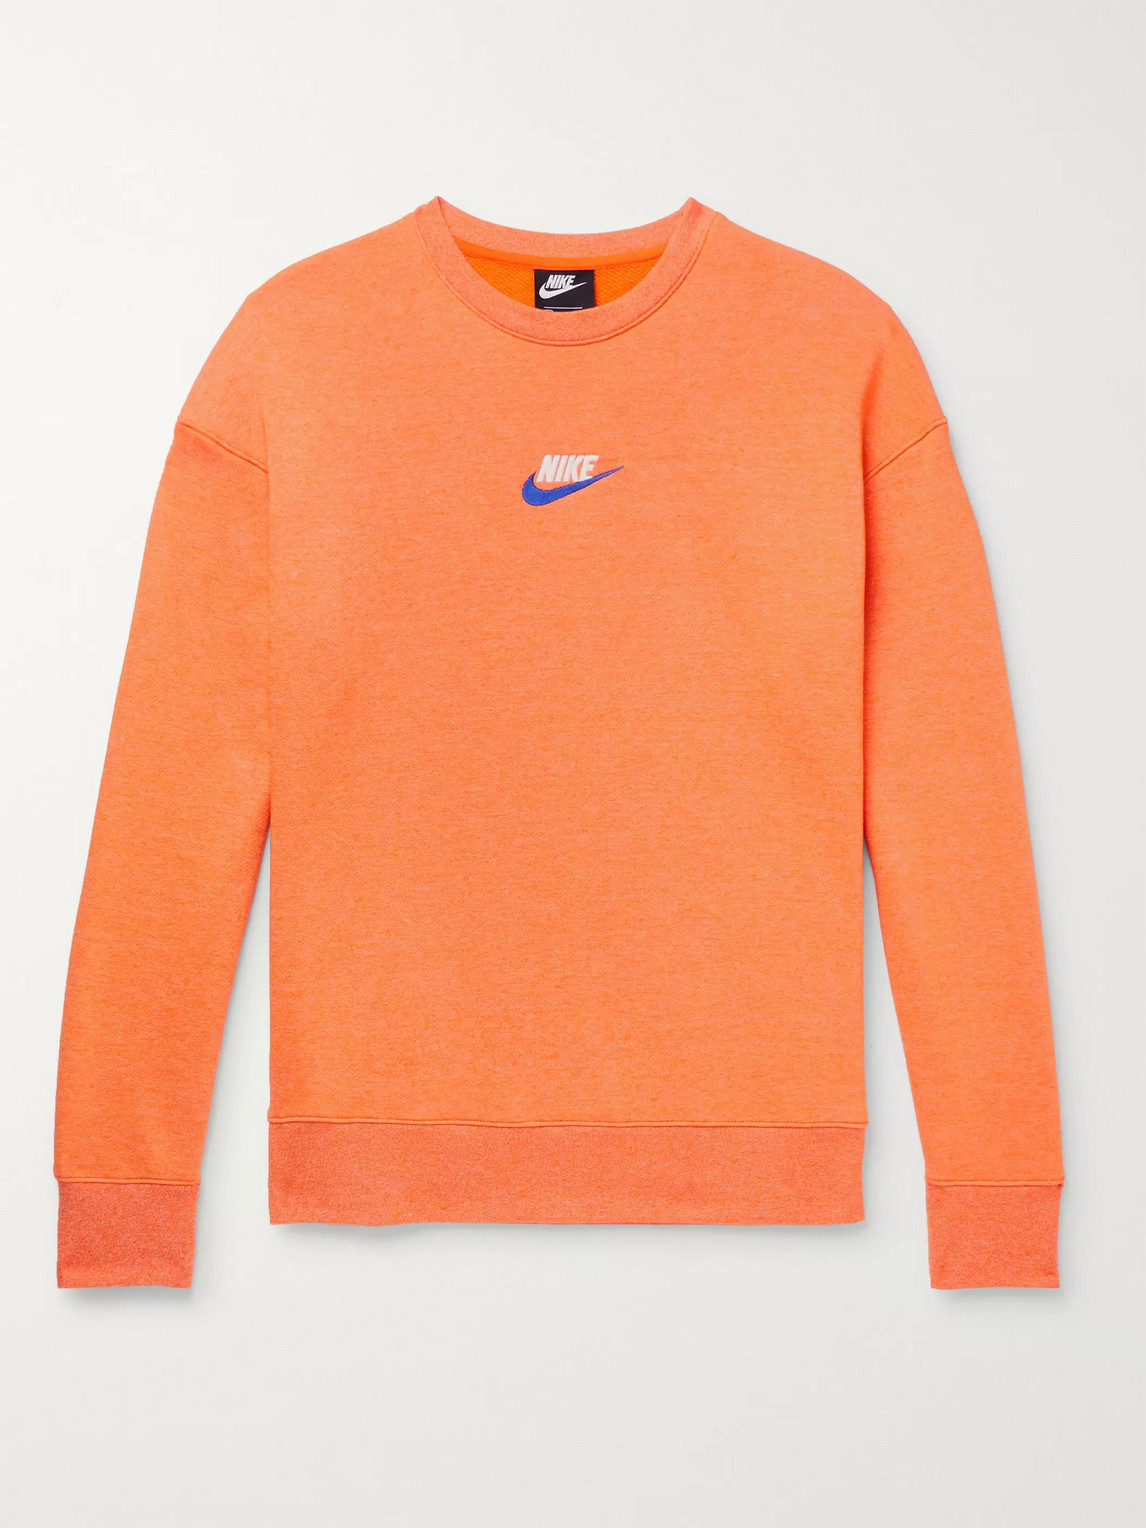 nike orange sweater